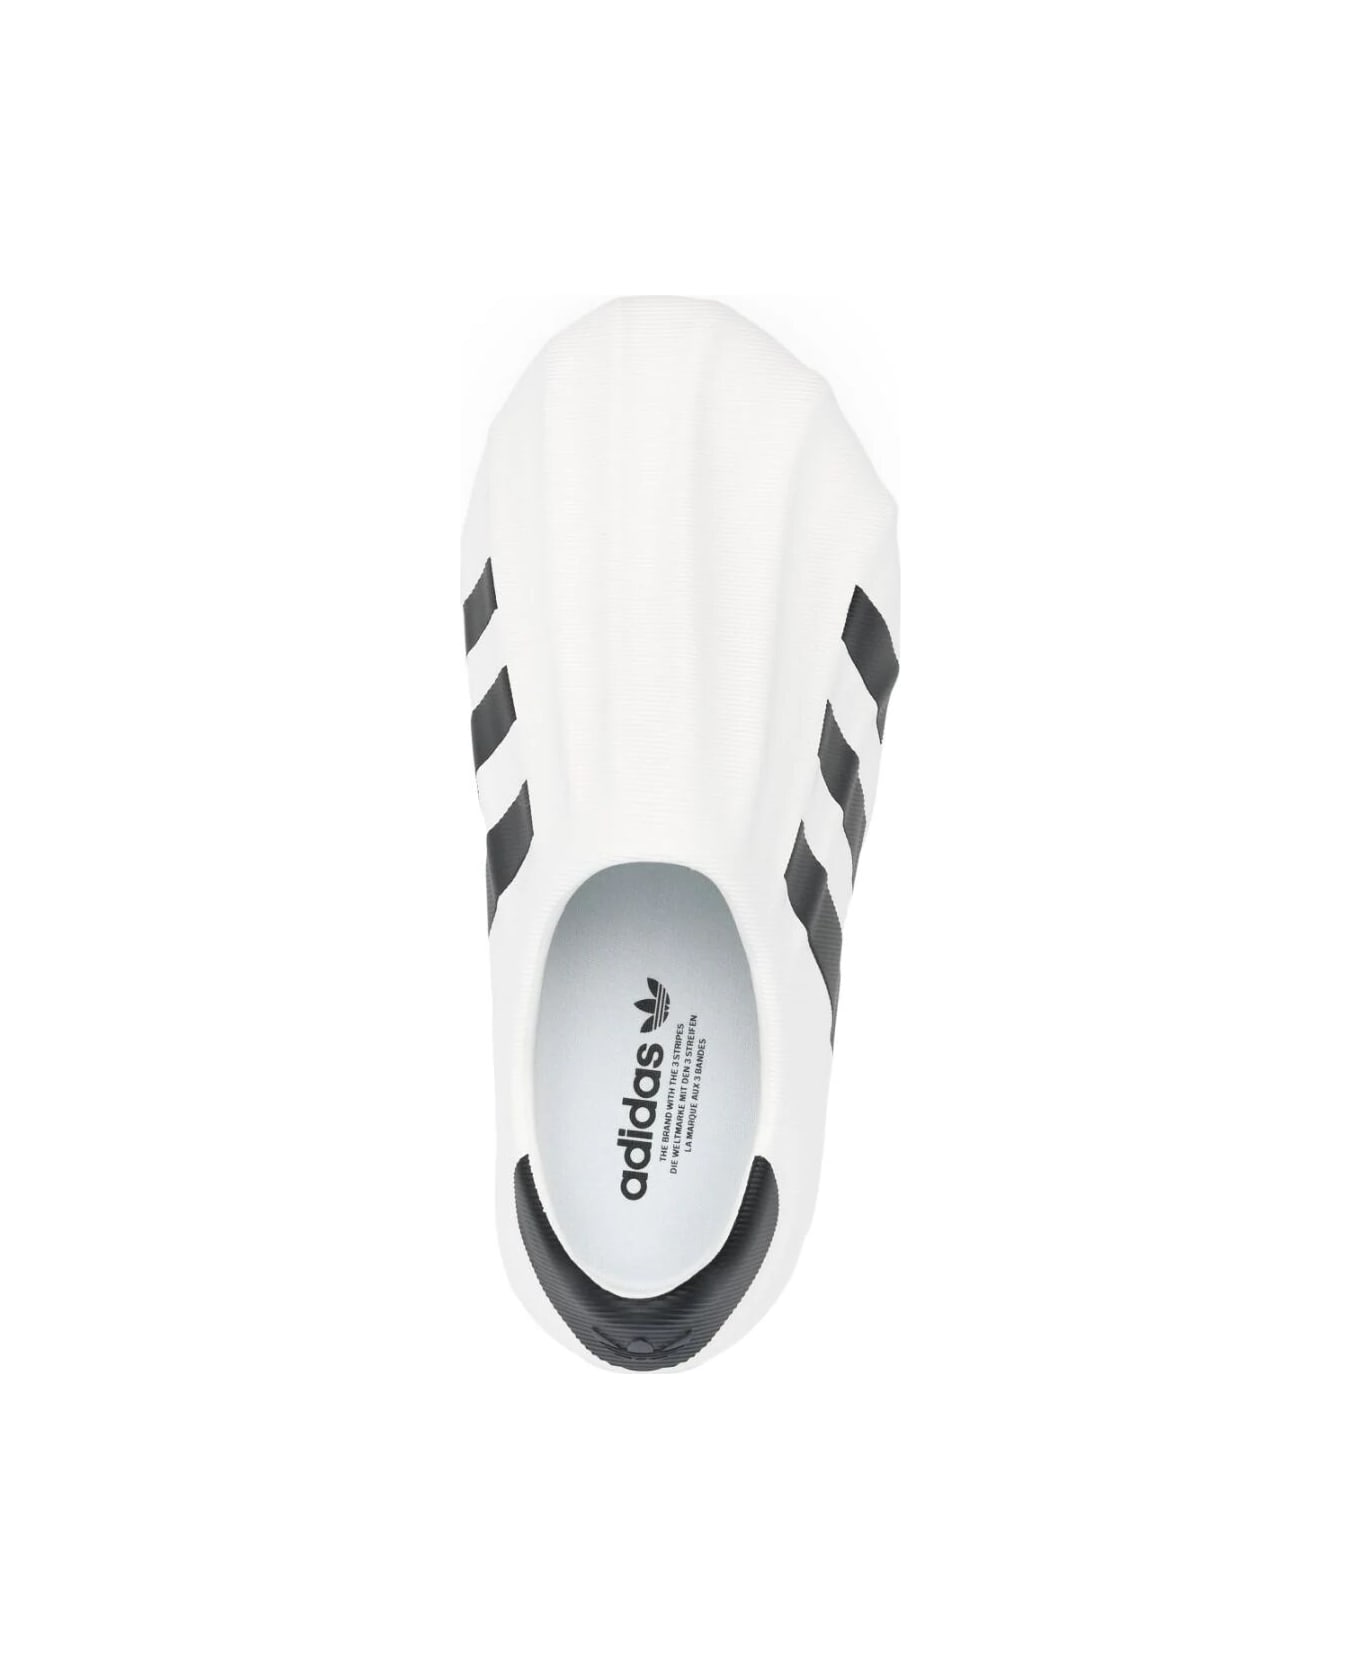 Adidas Adifom Superstar Sneakers - Cwhite Cblack Cblack